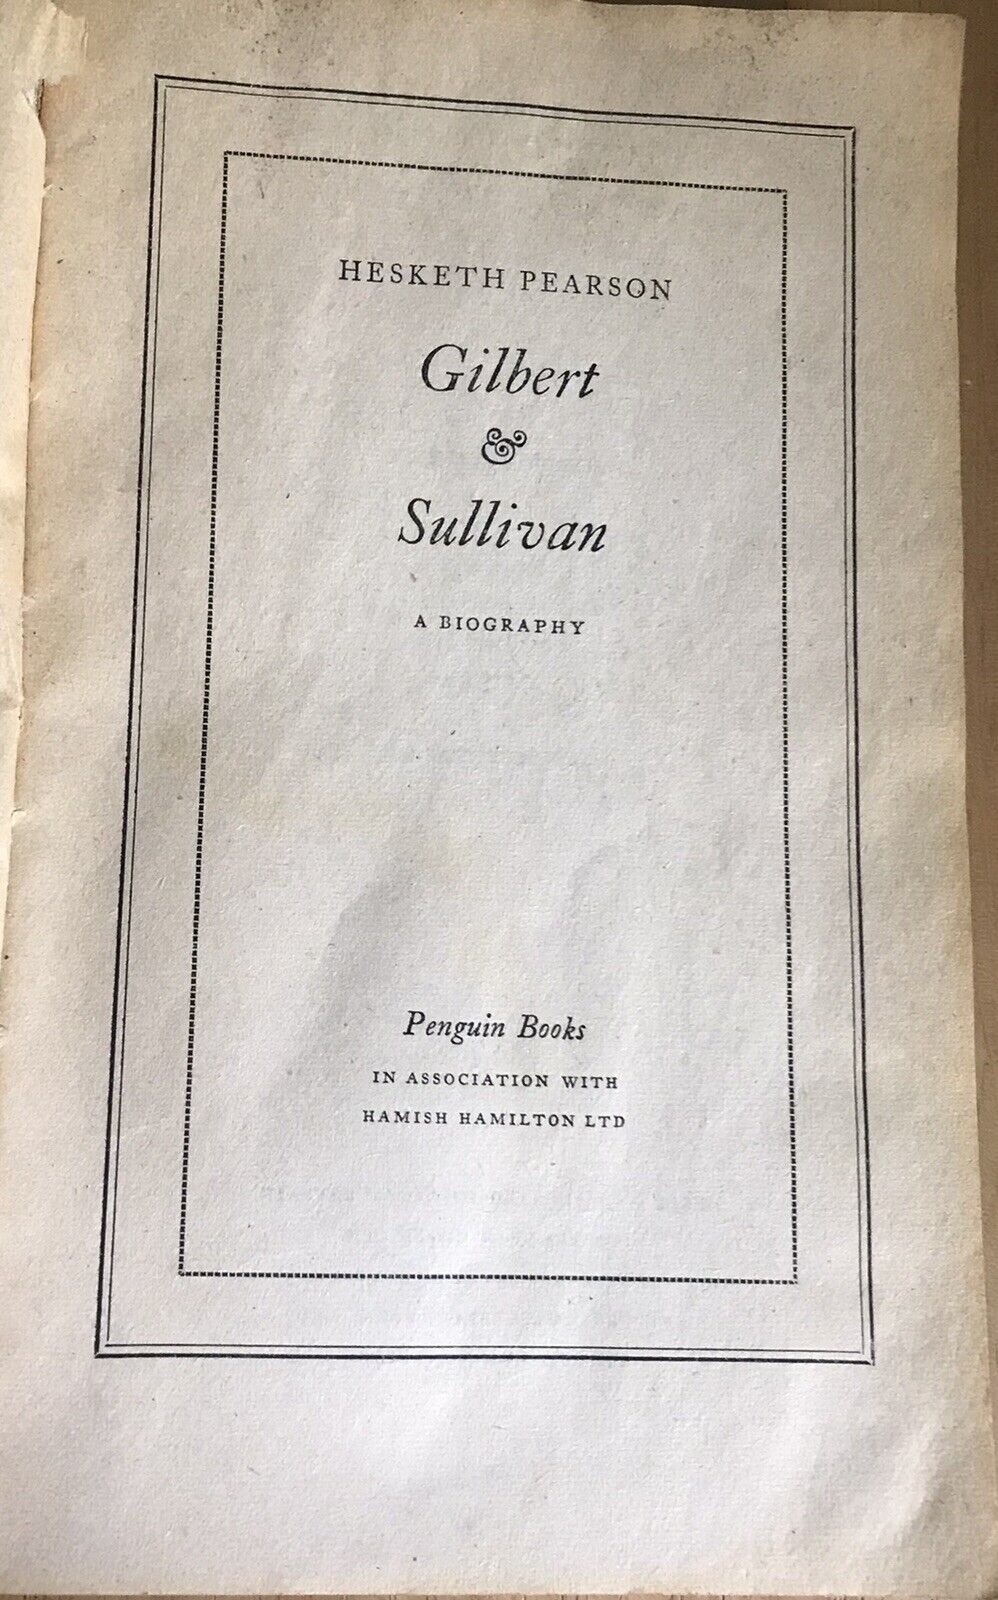 1956 Gilbert & Sullivan Biography- Hesketh Pearson(Penguin Books)